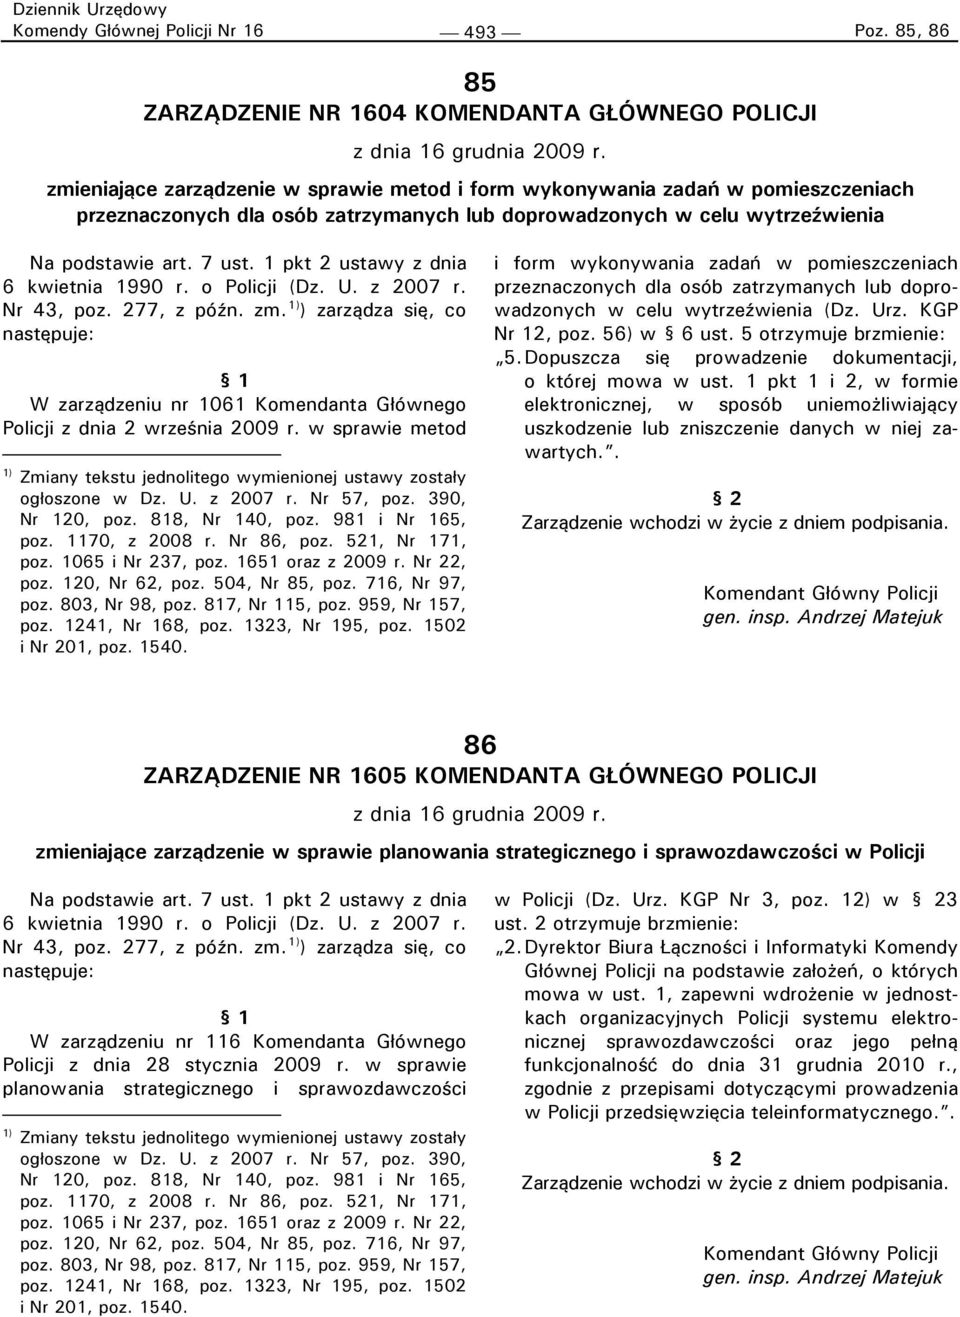 1 pkt 2 ustawy z dnia 6 kwietnia 1990 r. o Policji (Dz. U. z 2007 r. Nr 43, poz. 277, z późn. zm.